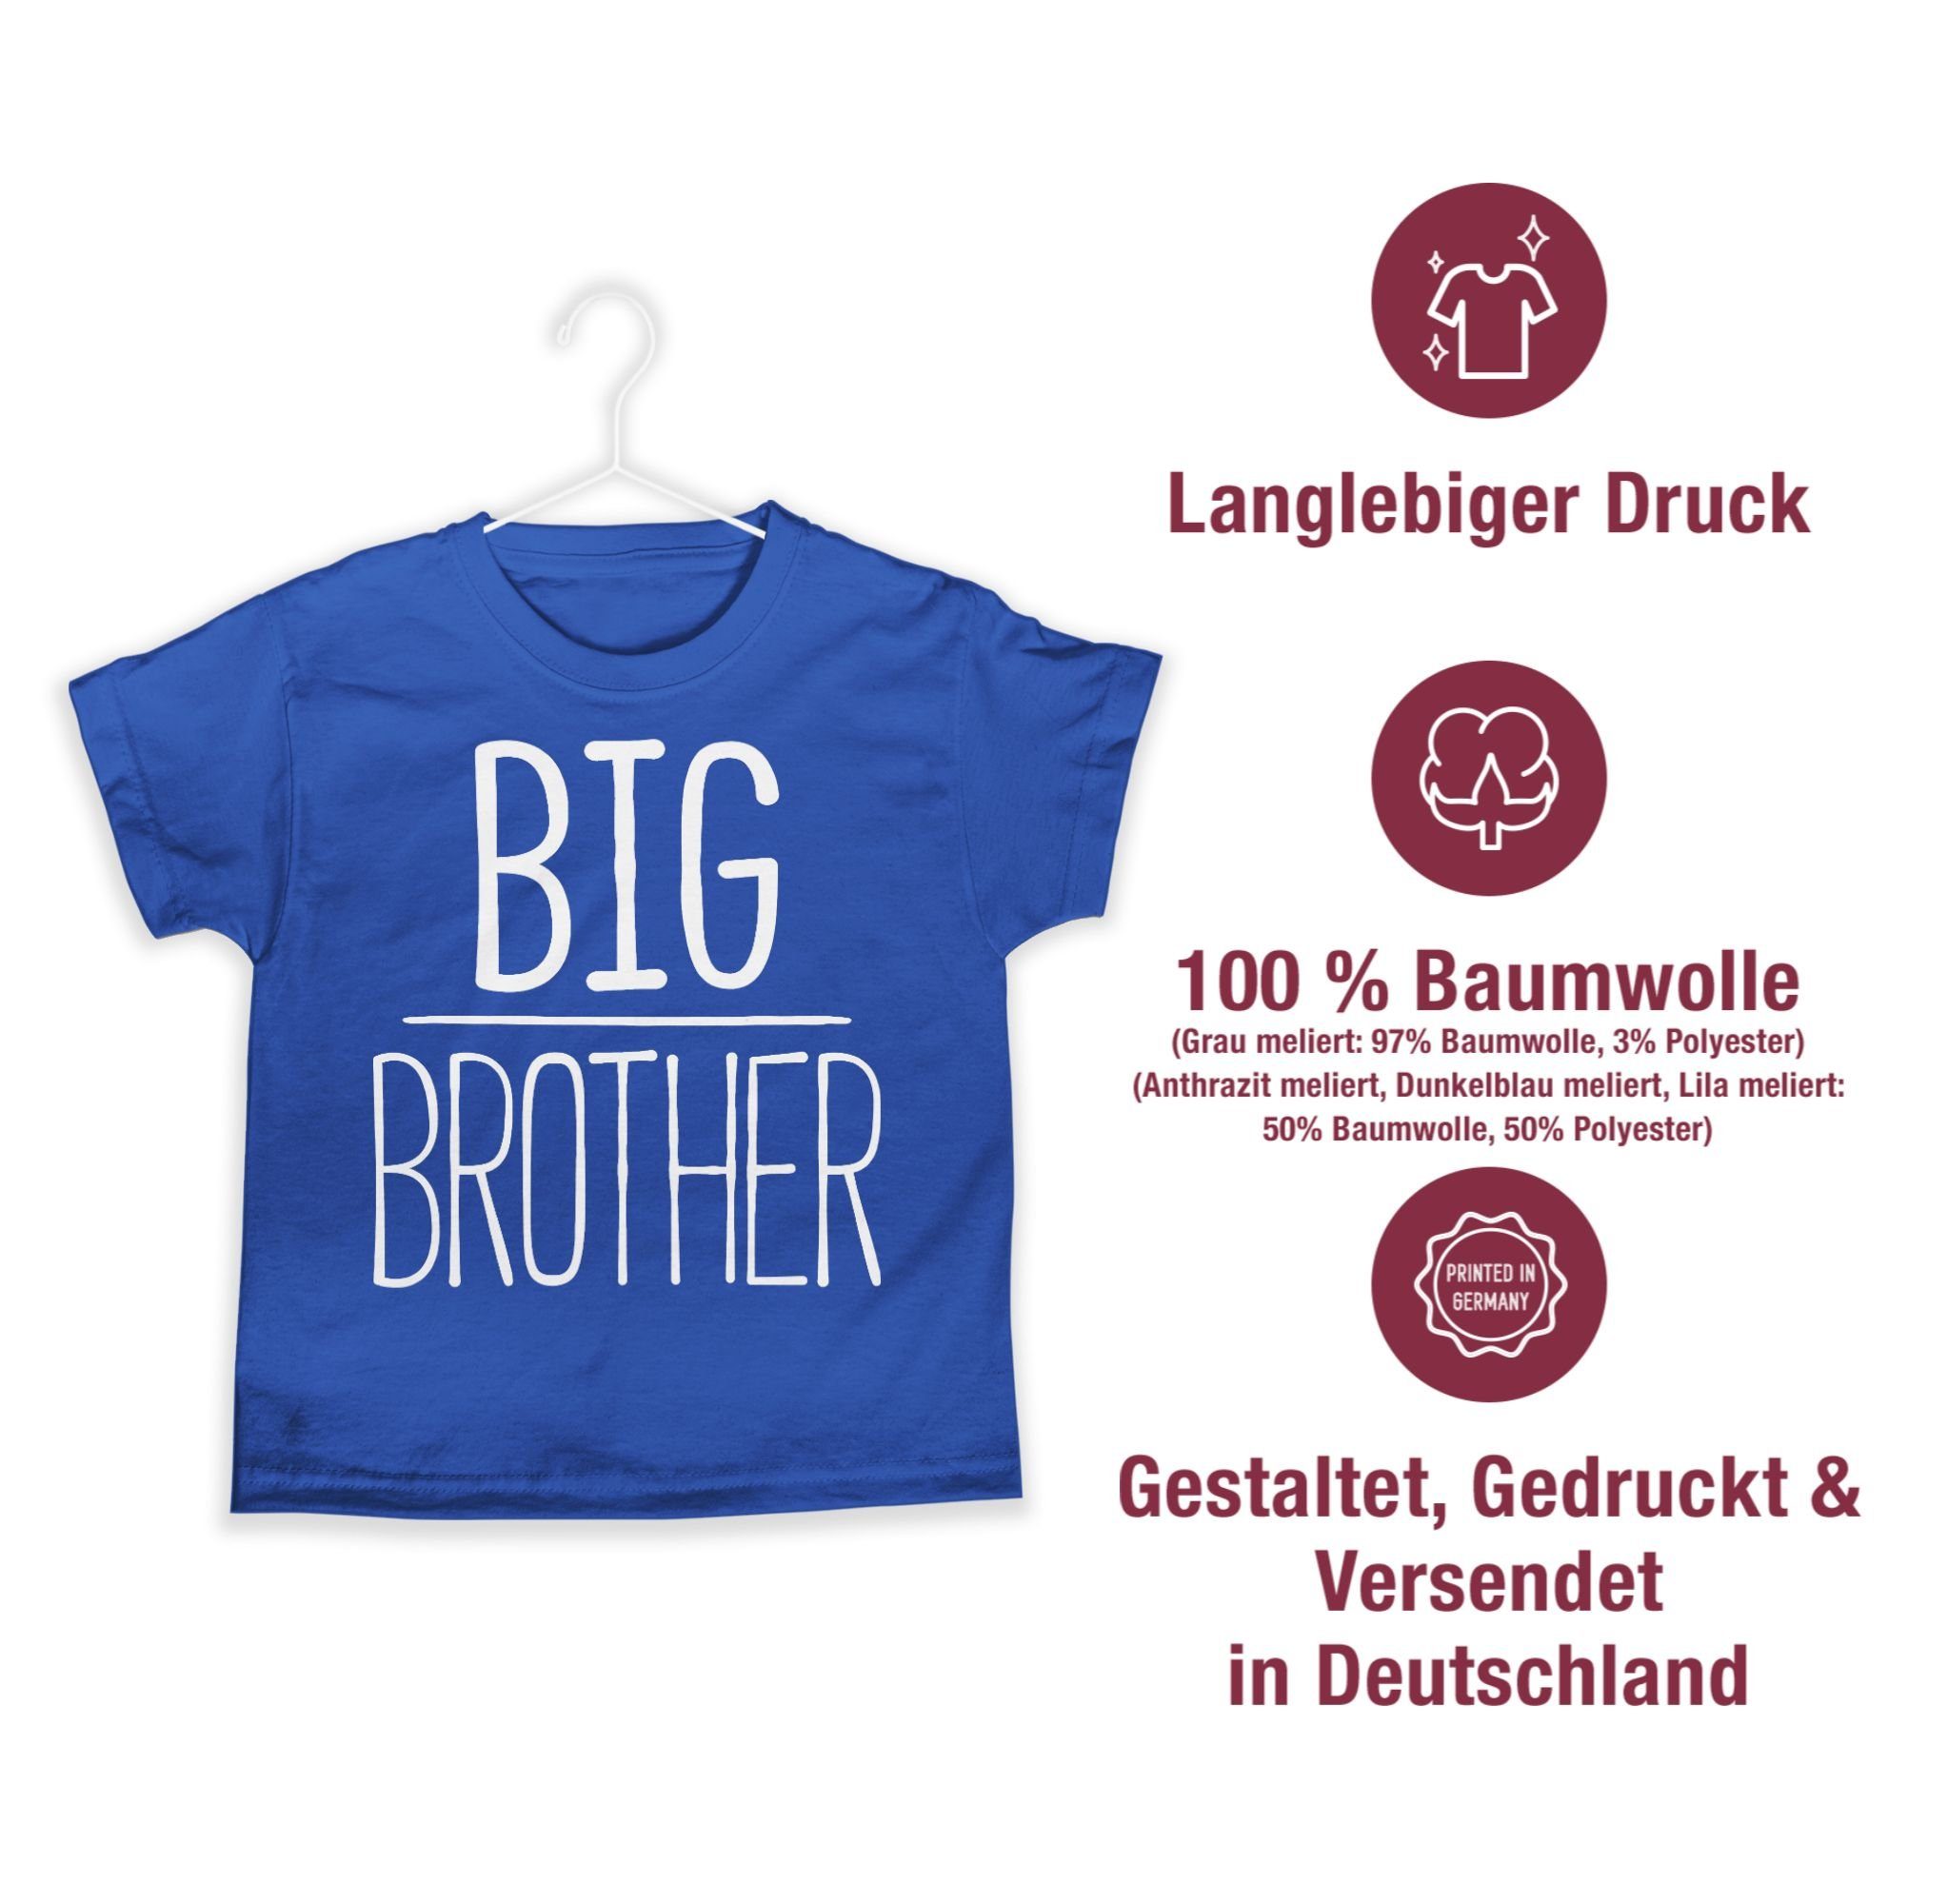 Brother Bruder 3 Royalblau T-Shirt Großer Big Shirtracer